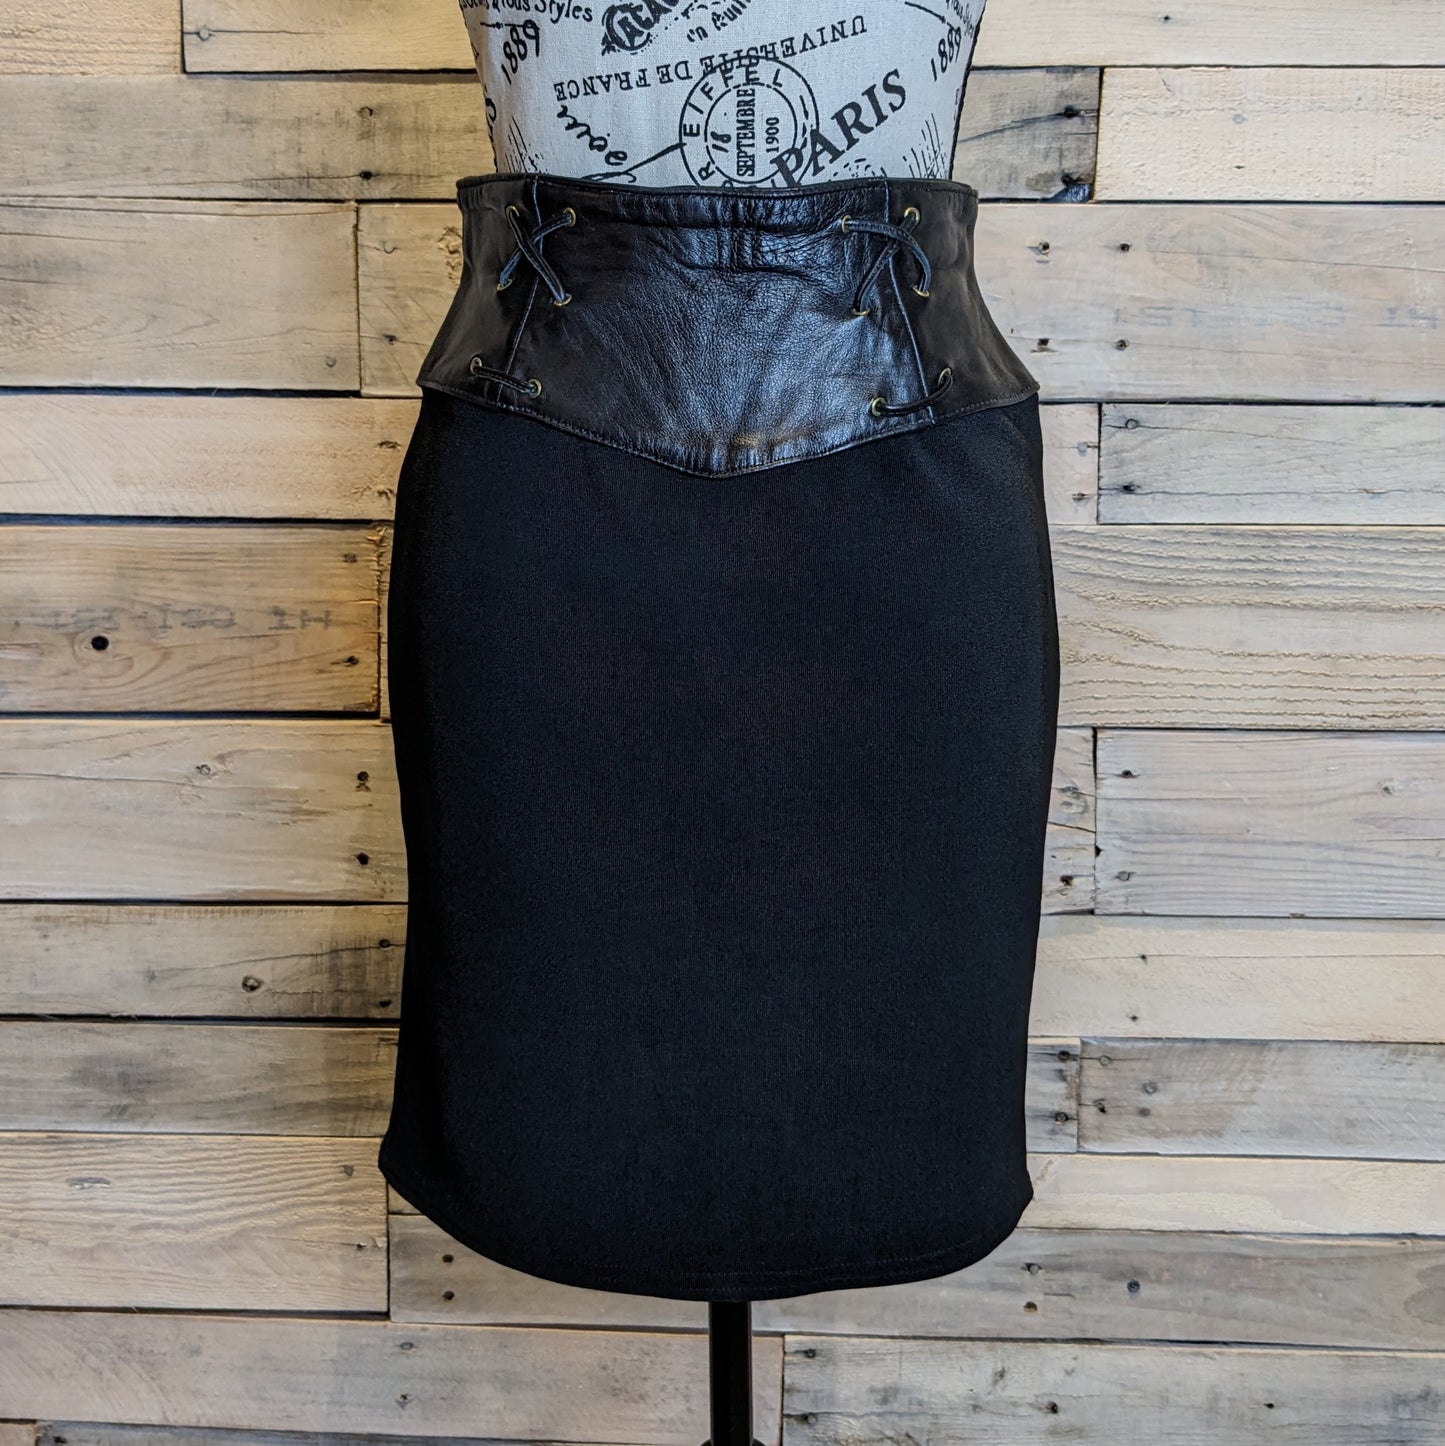 Firenze Vintage Leather Banded Skirt Sz 6